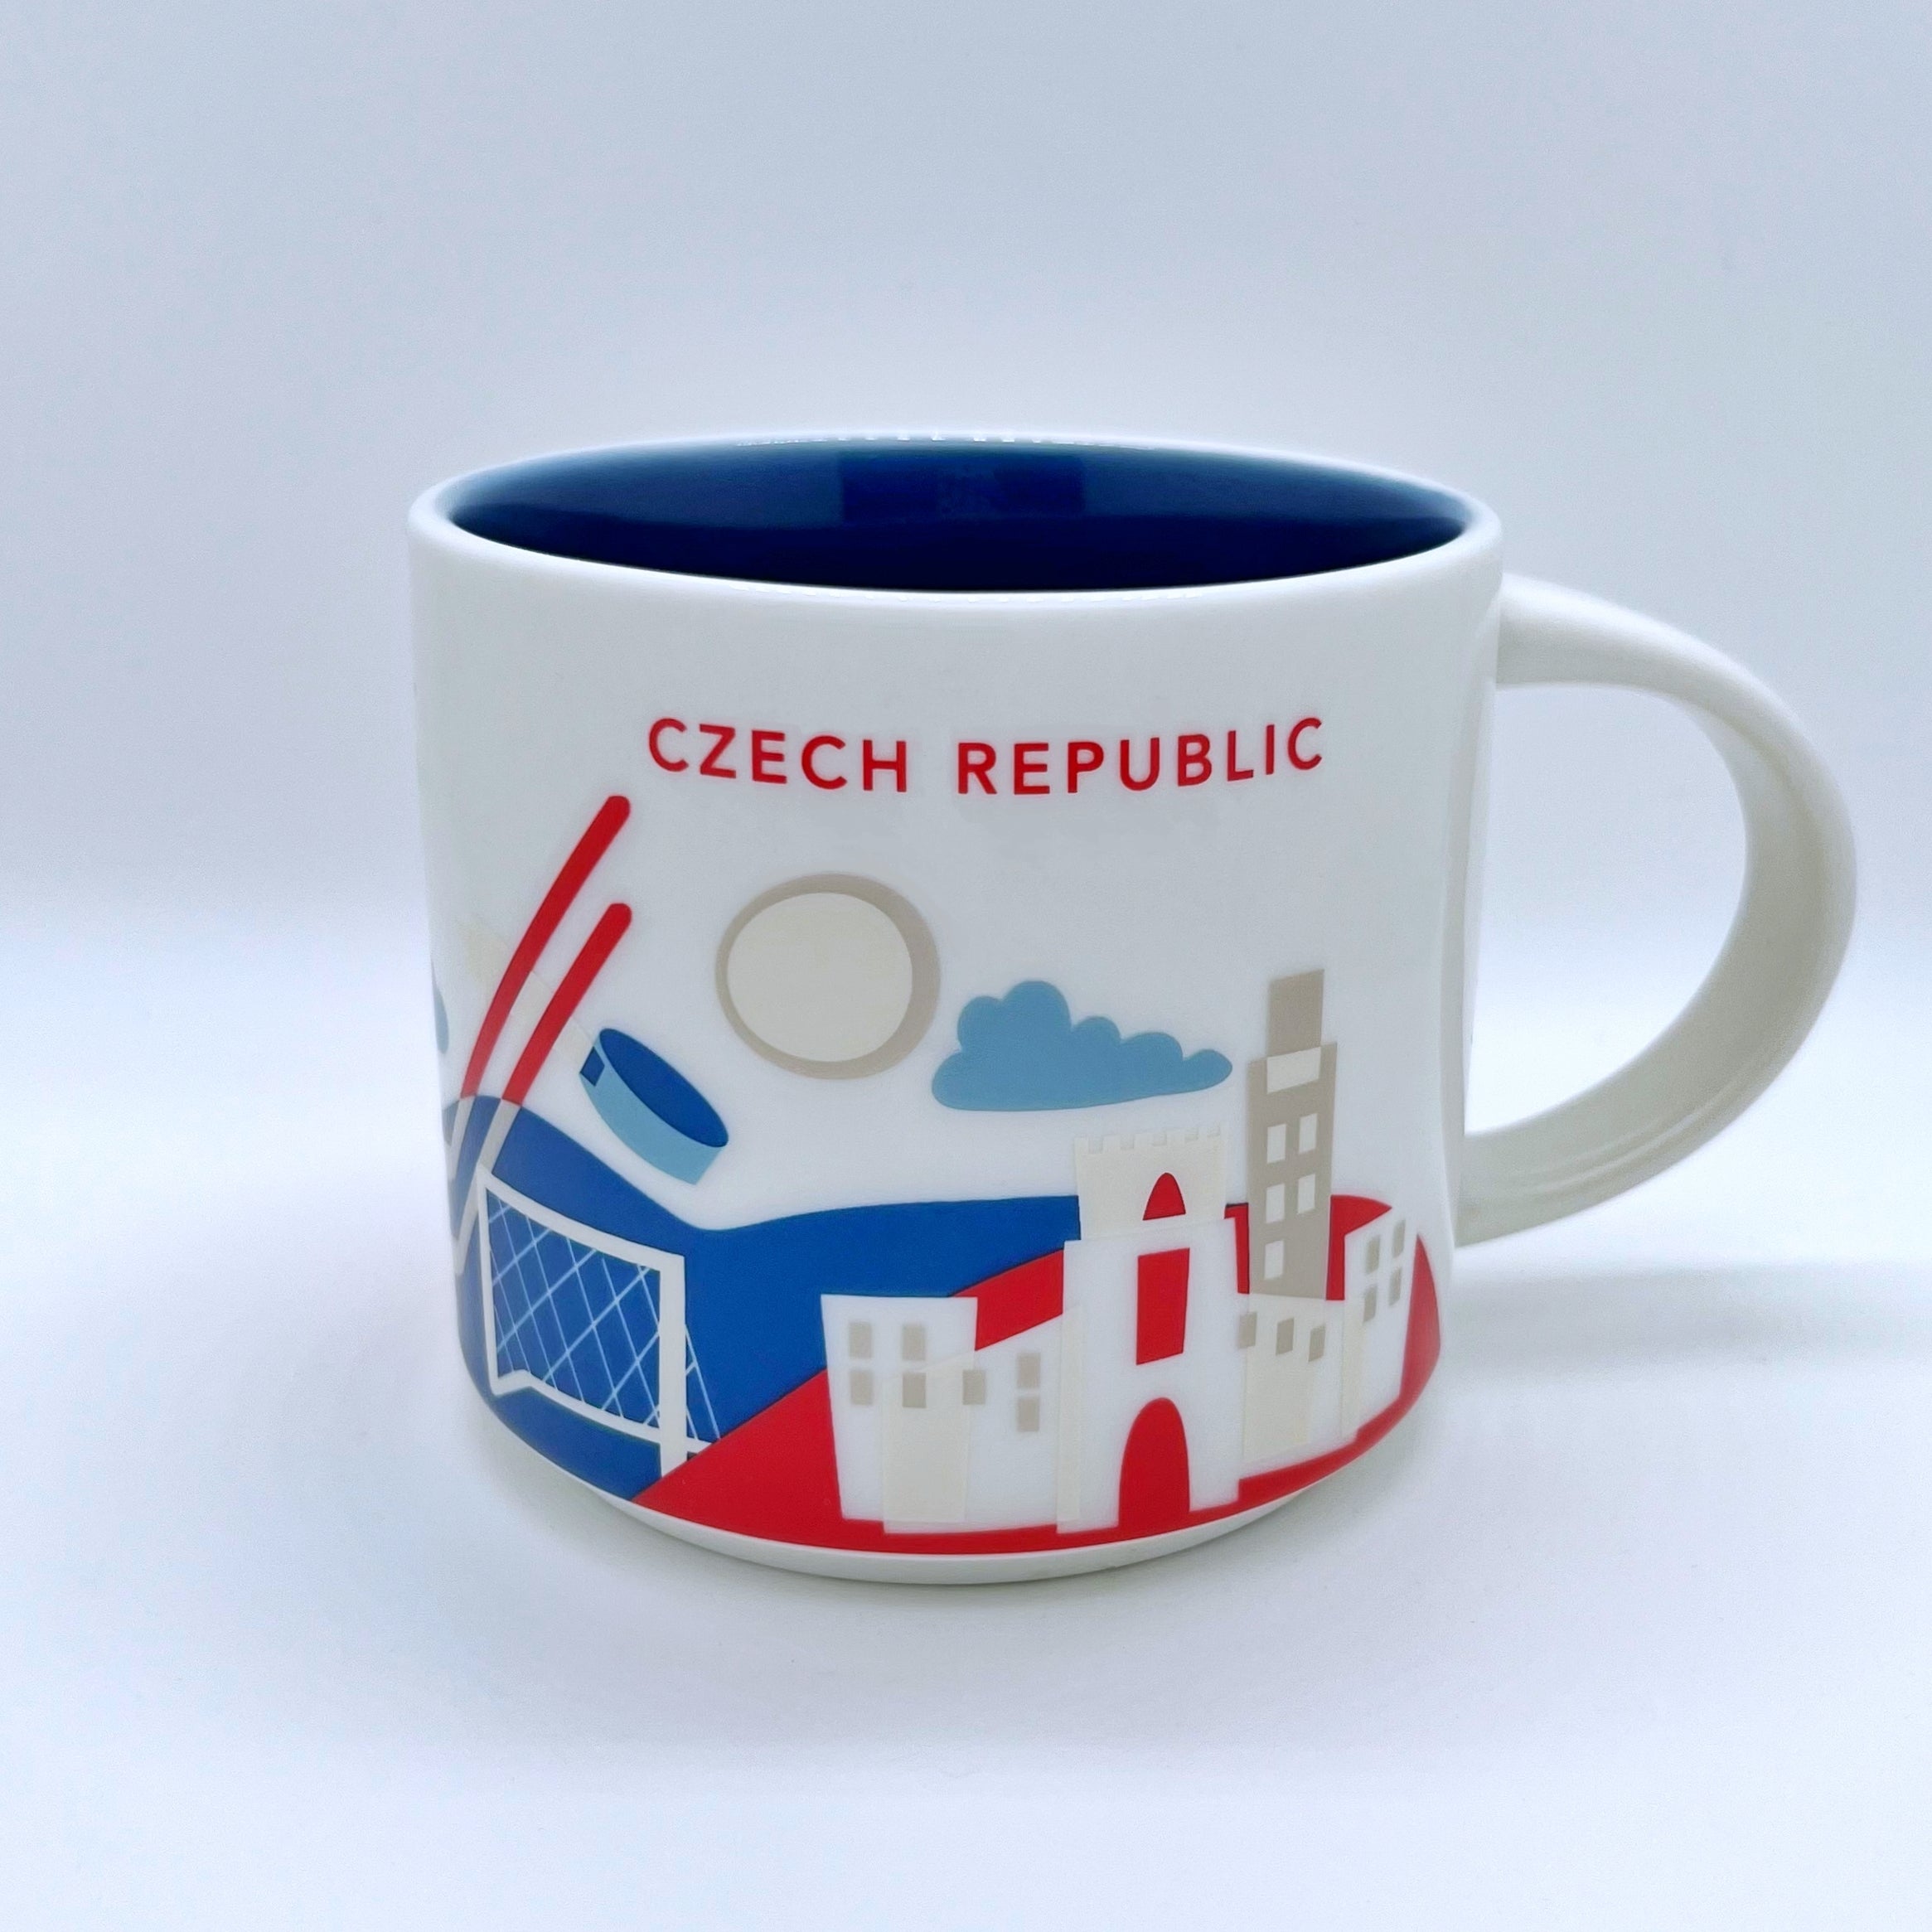 Kaffee Tee und Cappuccino Tasse von Starbucks mit gemalten Bildern aus dem Land Tschechische Republik